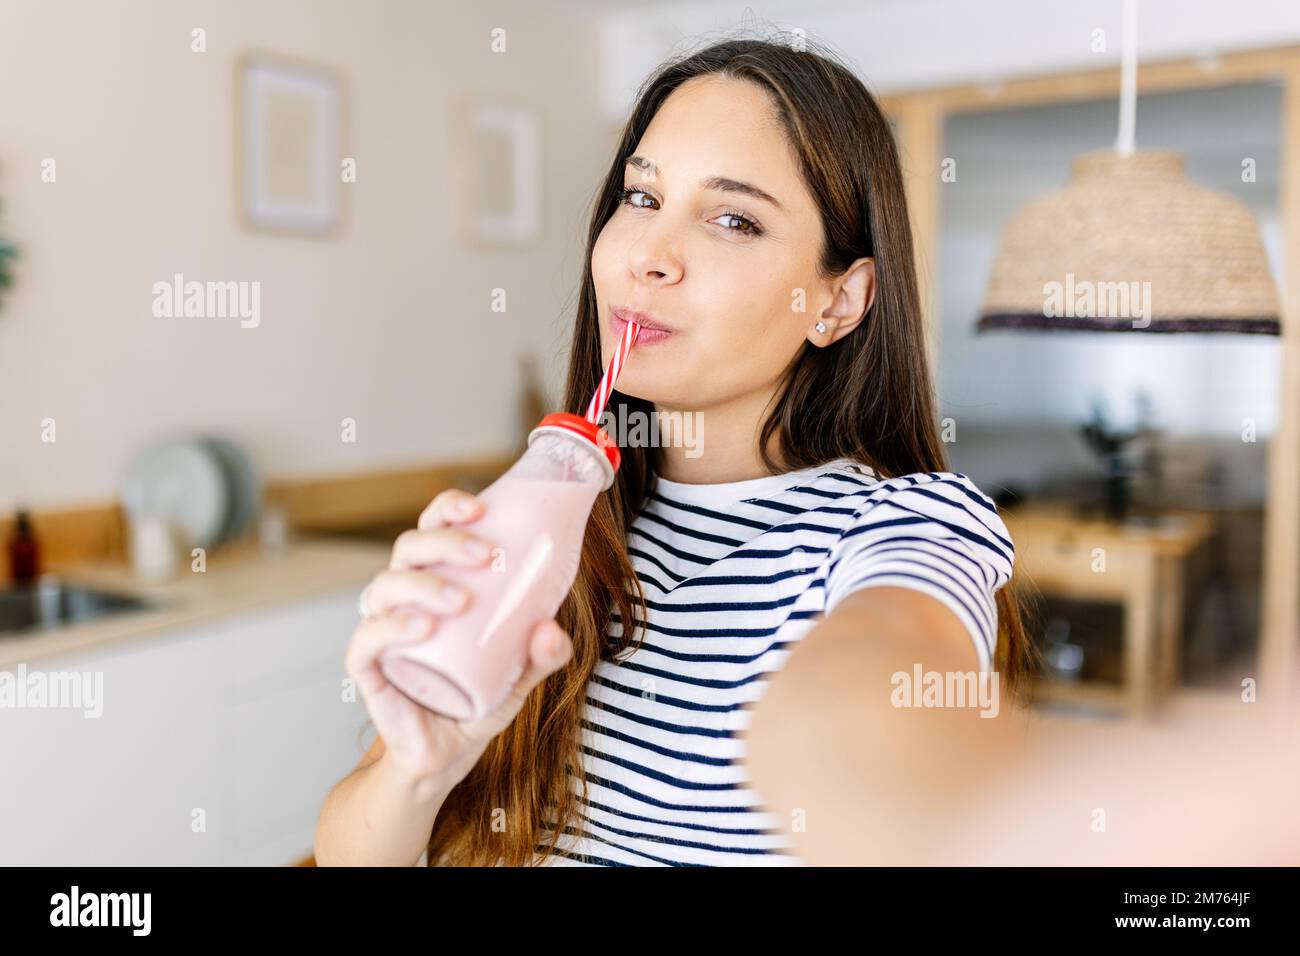 Fröhliche junge Erwachsene Frau, die Selfie nimmt, während sie gesunden Fruchtsaft trinkt Stockfoto